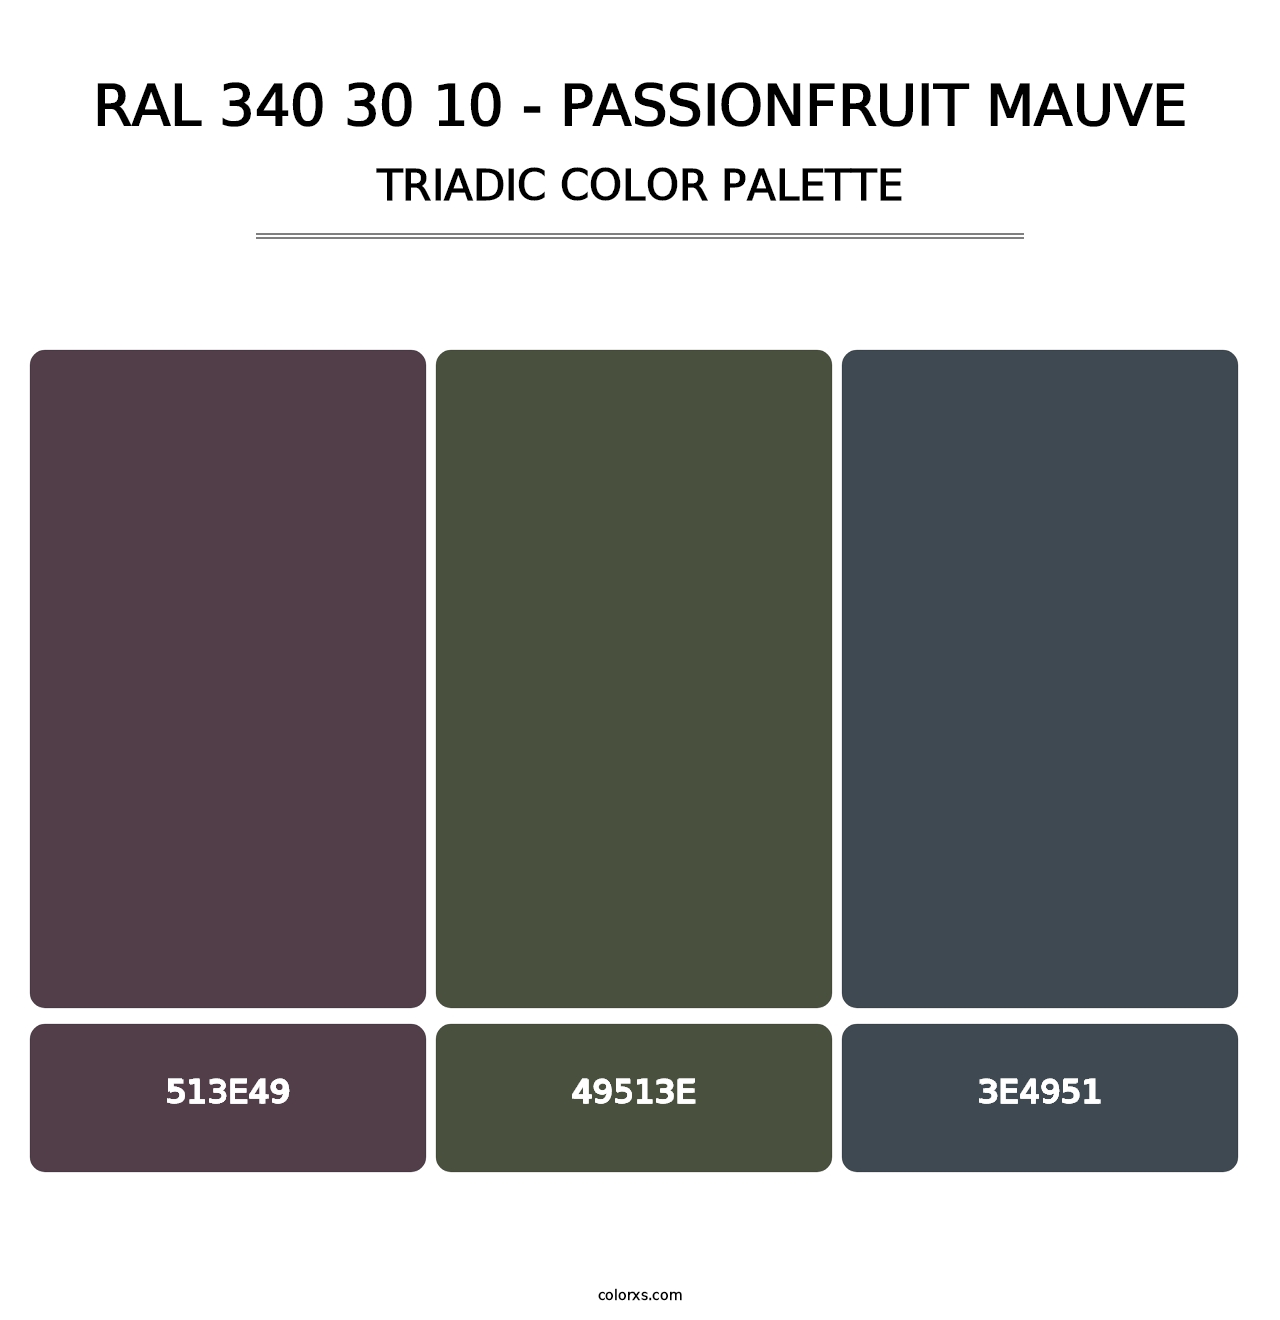 RAL 340 30 10 - Passionfruit Mauve - Triadic Color Palette